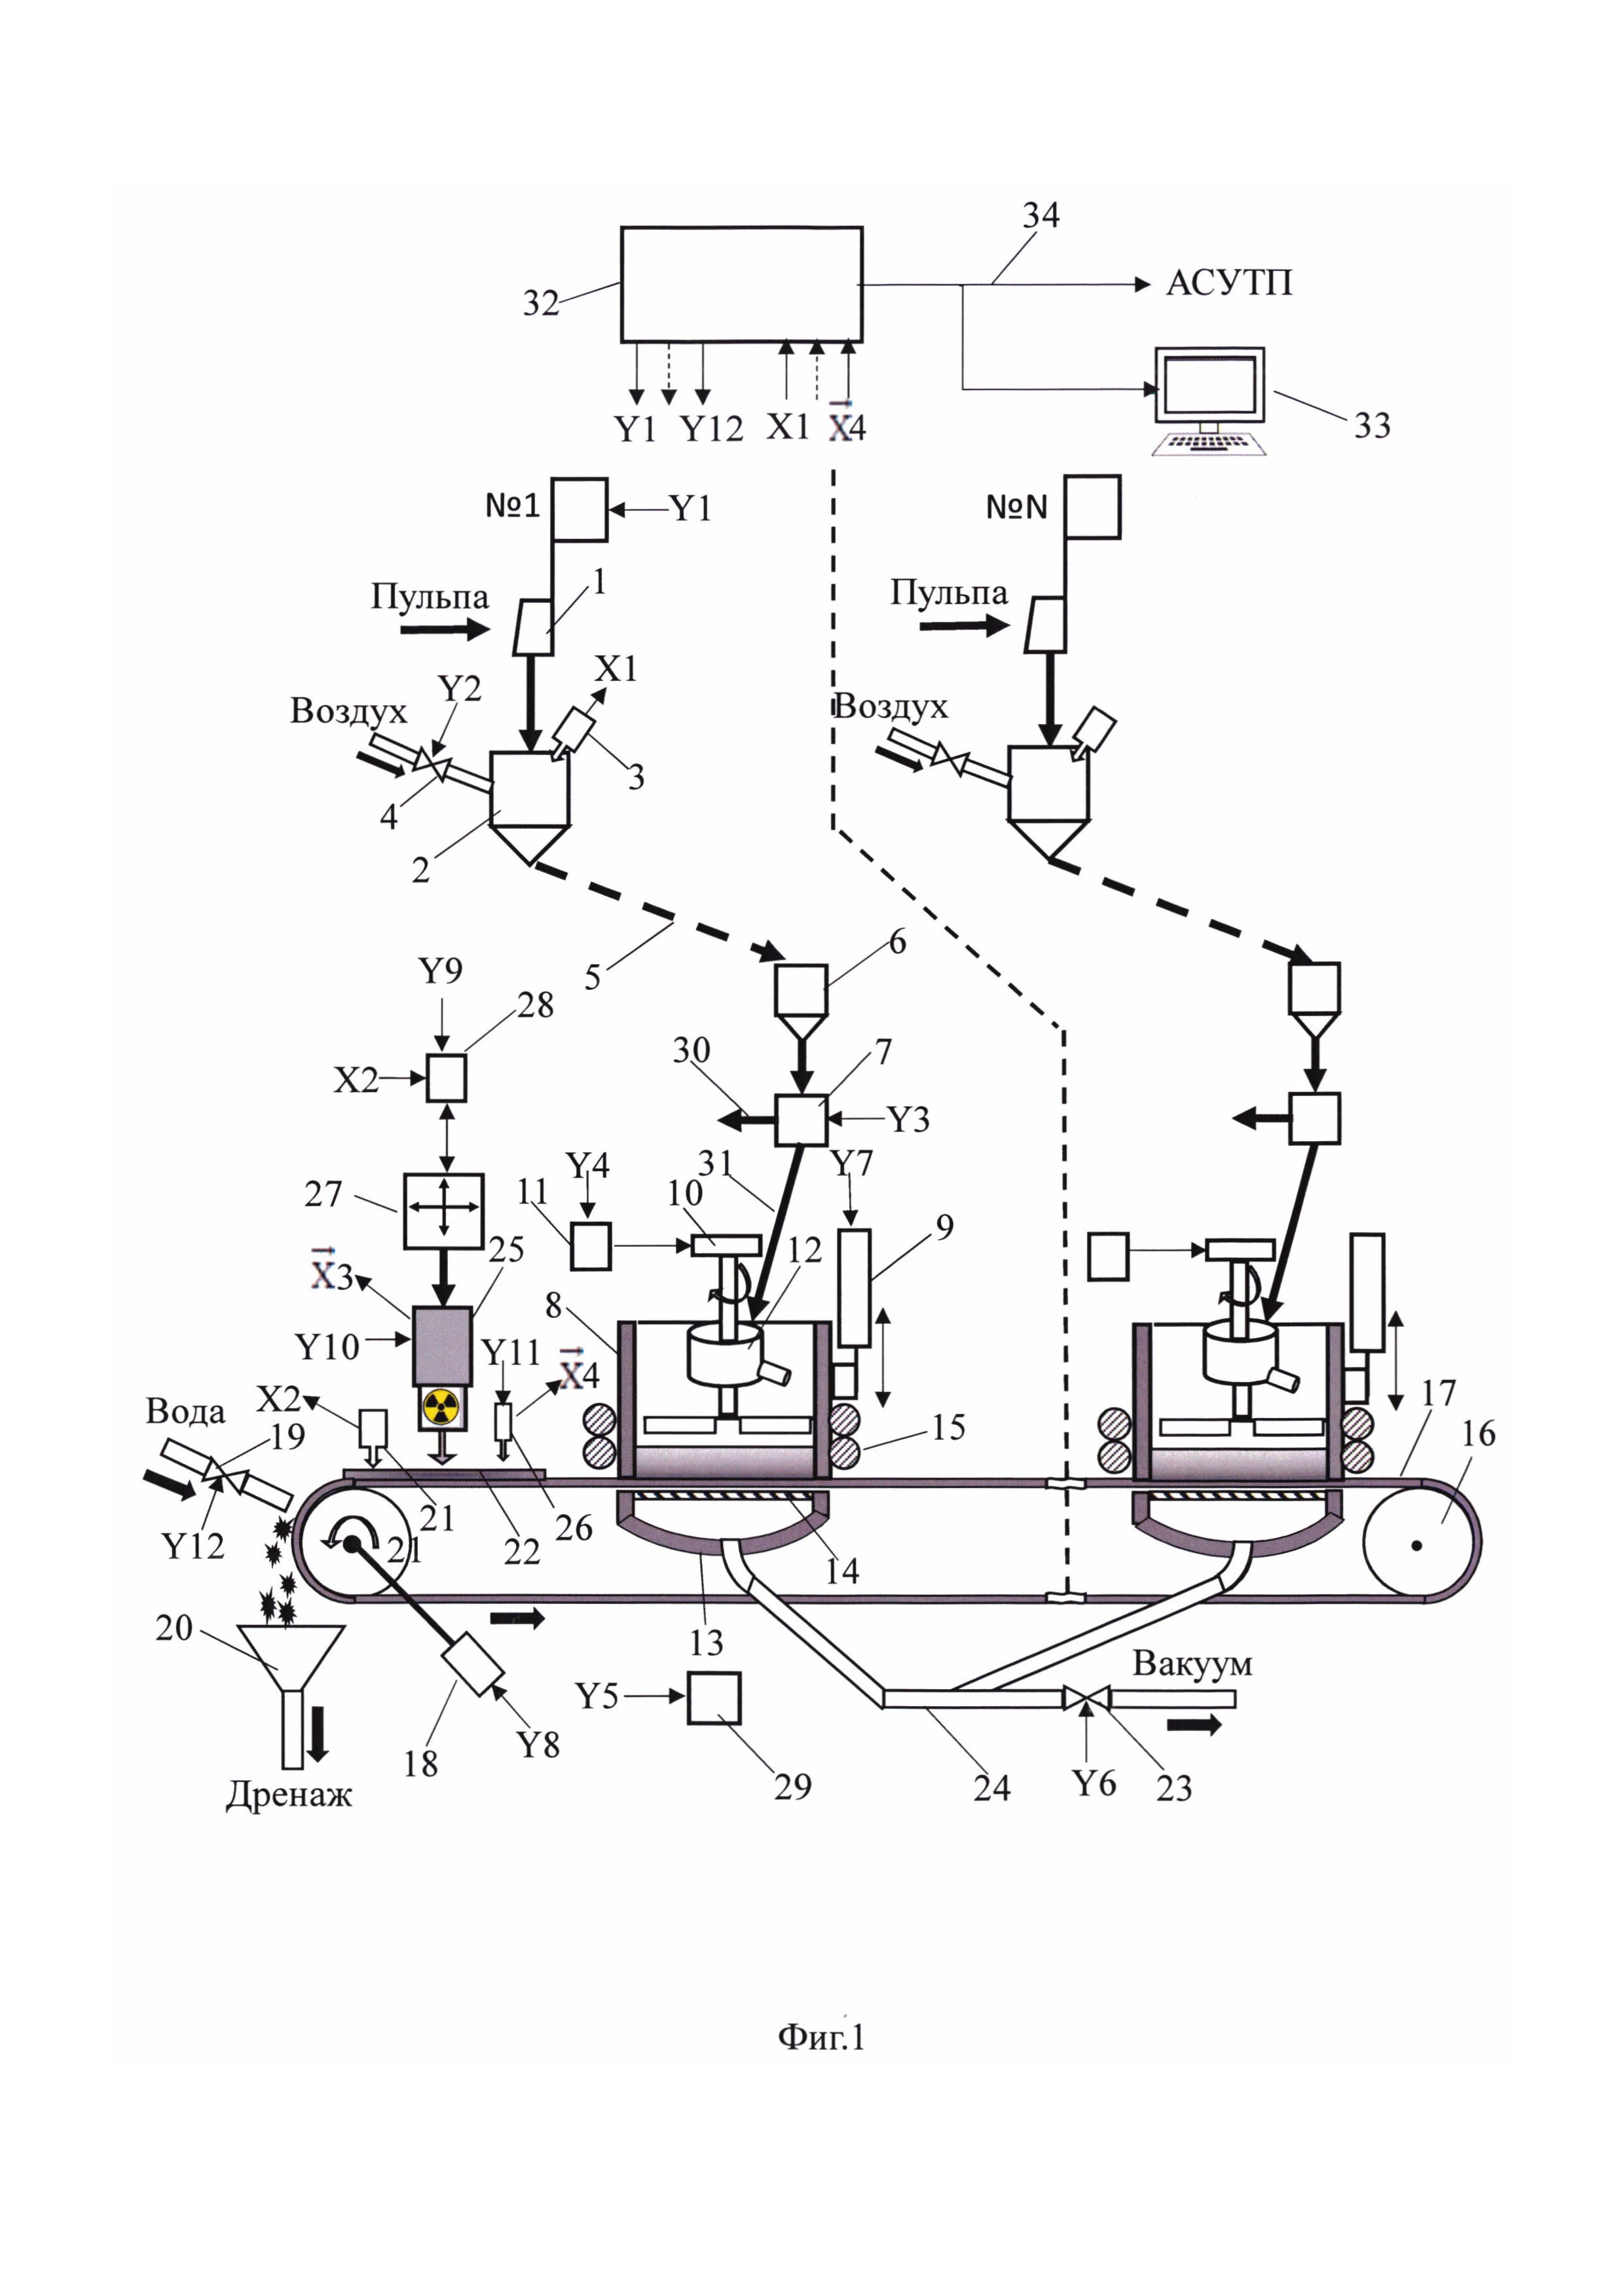 Автоматическая система контроля элементного состава проб пульповых продуктов